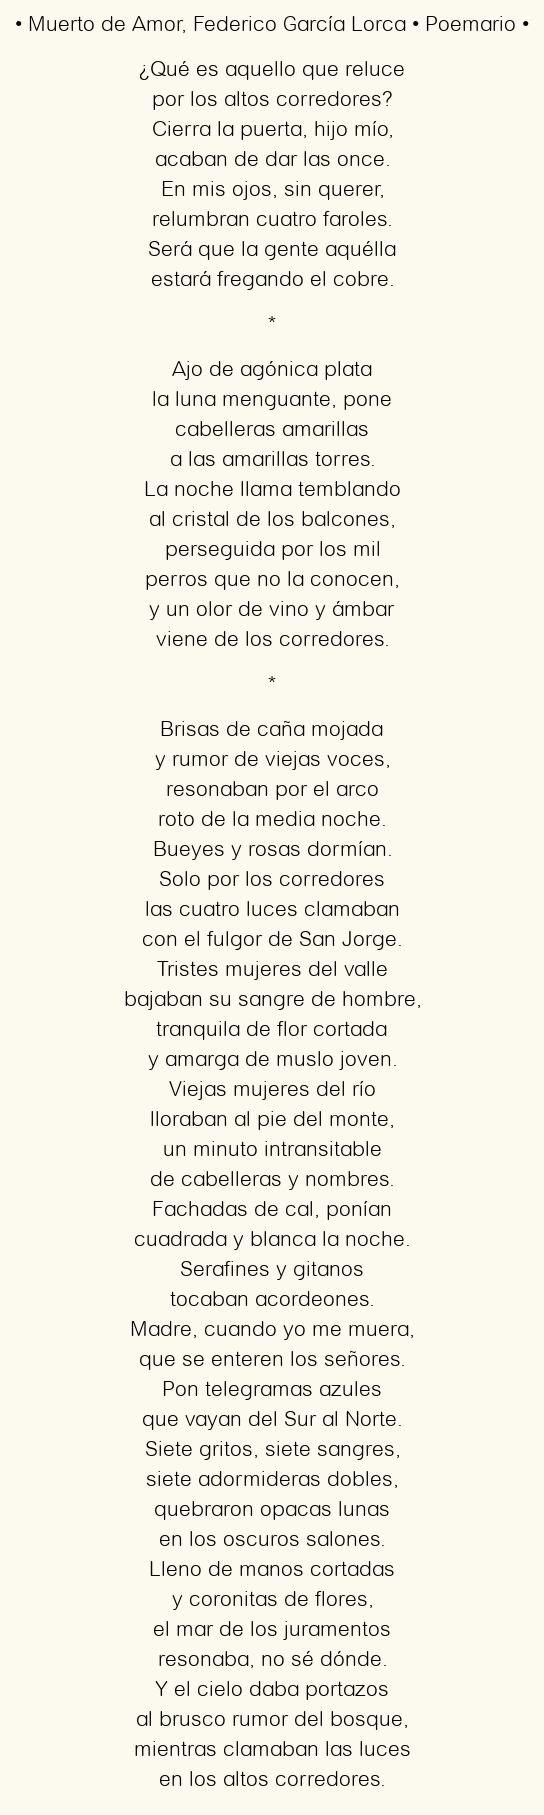 El análisis del impactante poema ‘Muerto de amor’ de Federico García Lorca